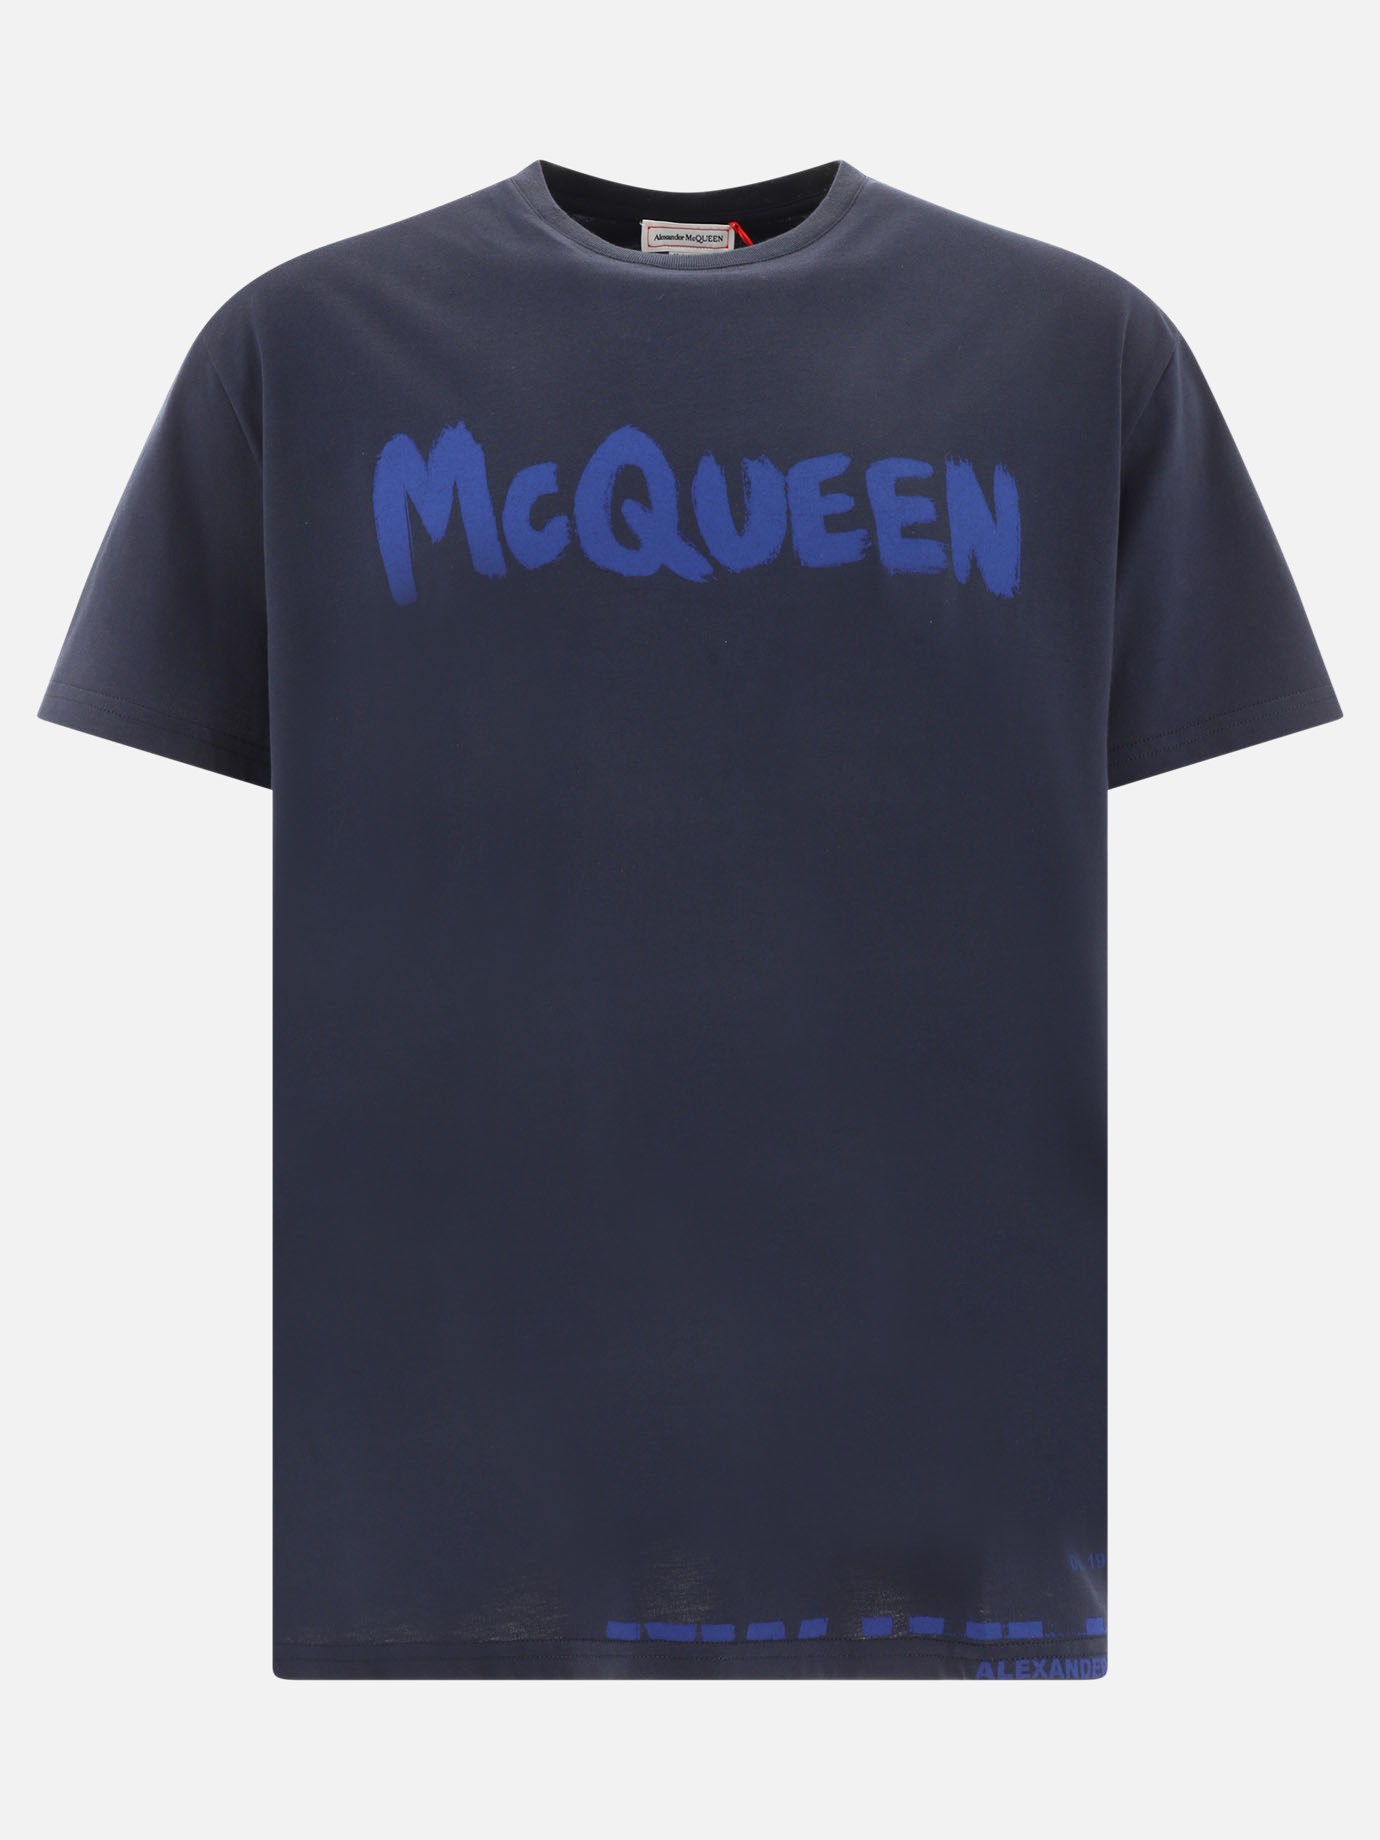 T-shirt  McQueen Graffiti by Alexander McQueen - 0